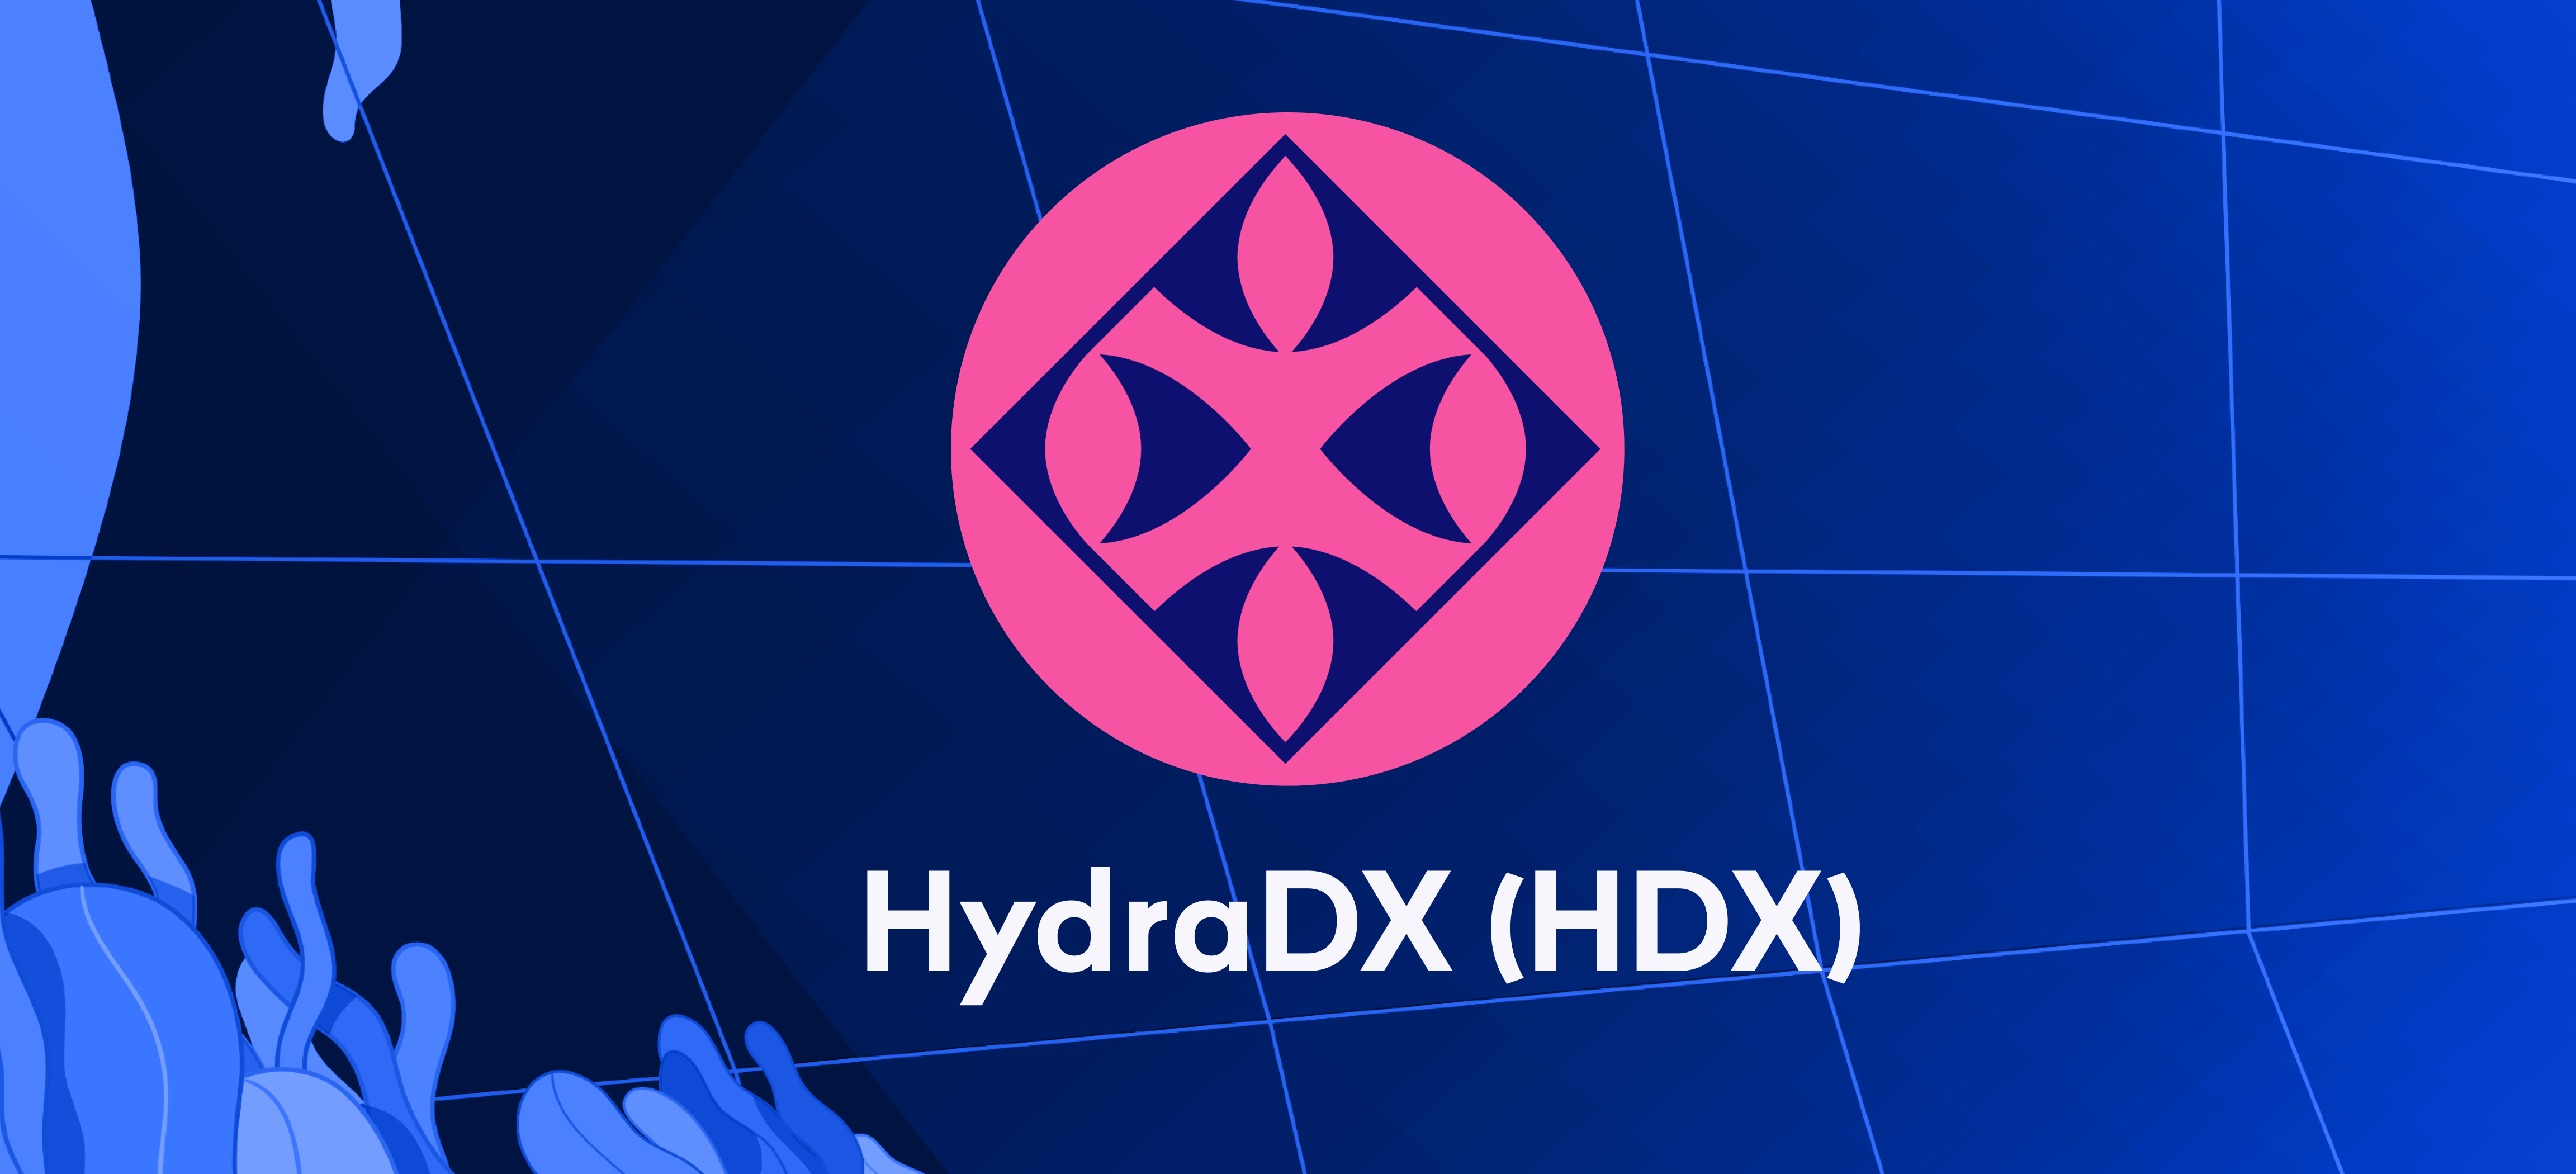 Der Handel mit HydraDX (HDX) beginnt am 24. Januar – zahlen Sie jetzt ein!